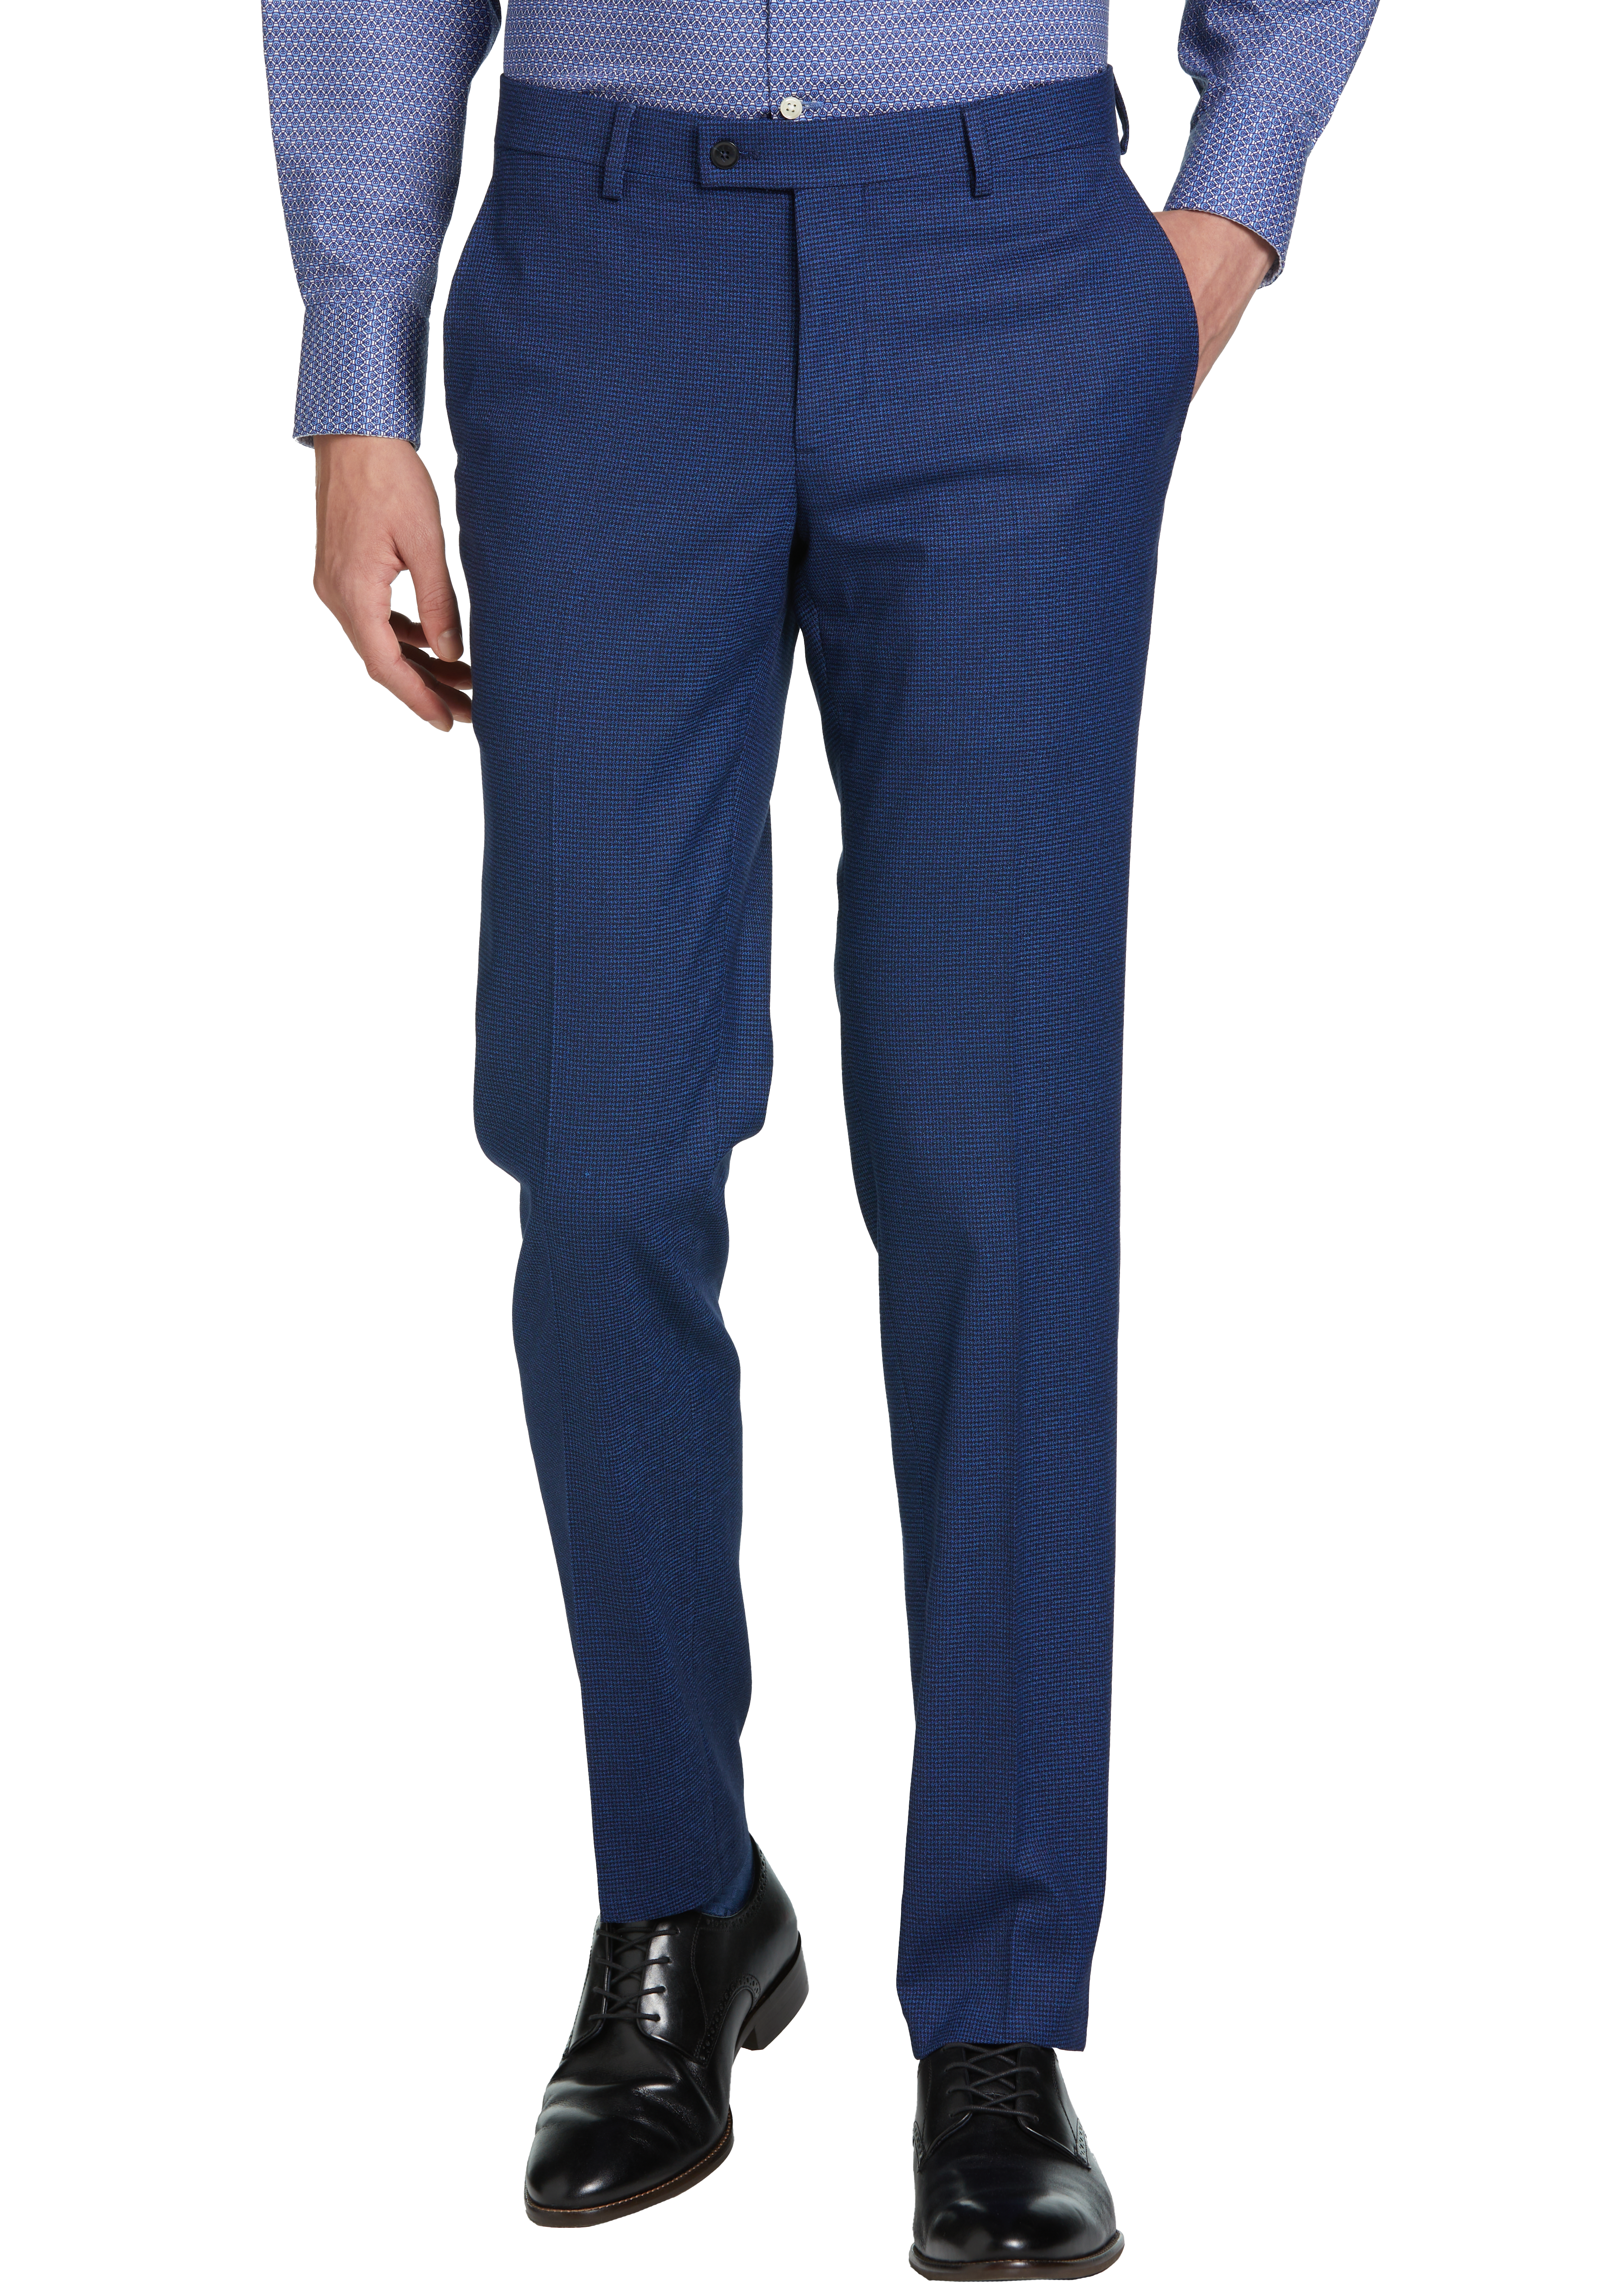 Egara Skinny Fit Suit Separates Pant, Blue Check